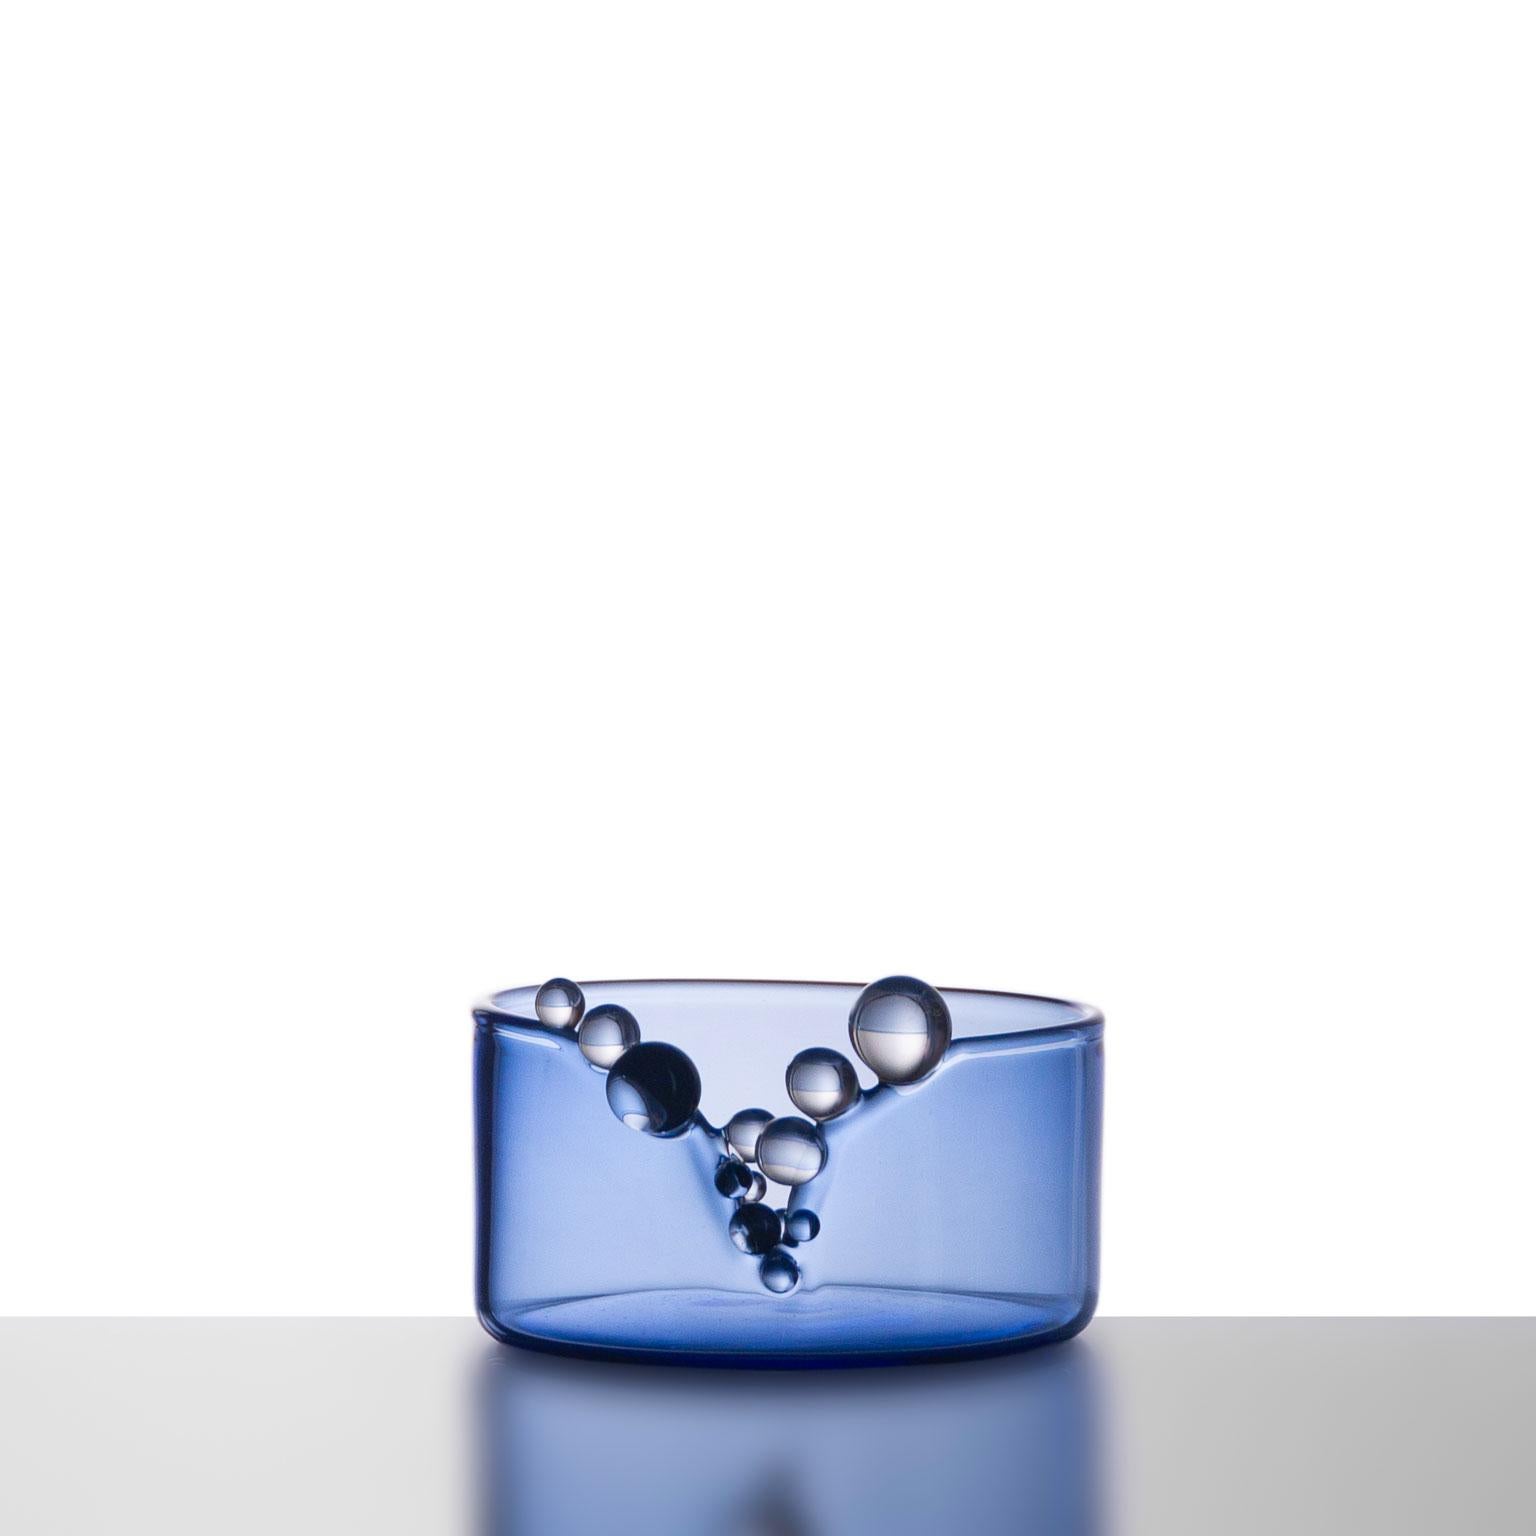 Vase en verre soufflé Bubble Kintsugi #Blue 2023 par Simone Crestani

Bulle Kintsugi #Bleu

Artiste : Simone Crestani
MATERIAL : Verre borosilicate
Technique : Flameworking
Pièce unique
Année : 2023
Mesures : Hauteur 2.36'', largeur 4.52'',